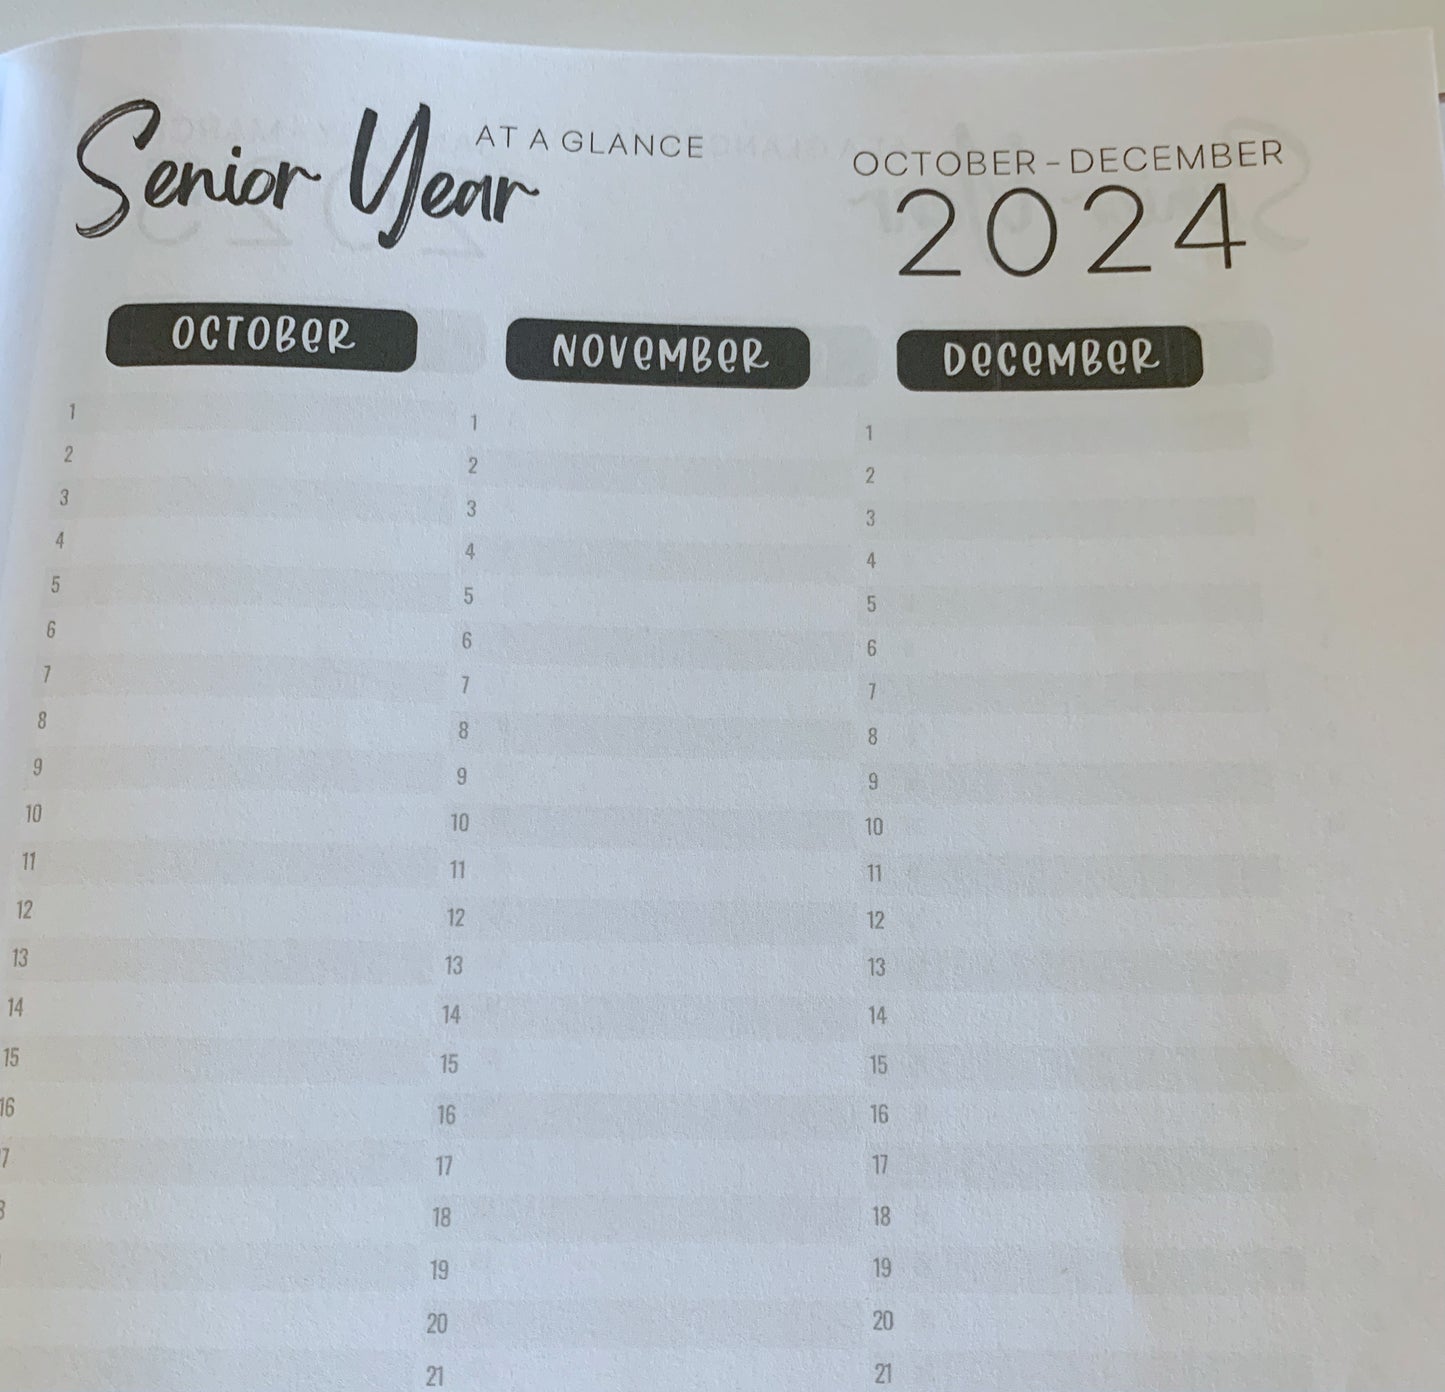 Senior Year Planner for Mom 2024-2025